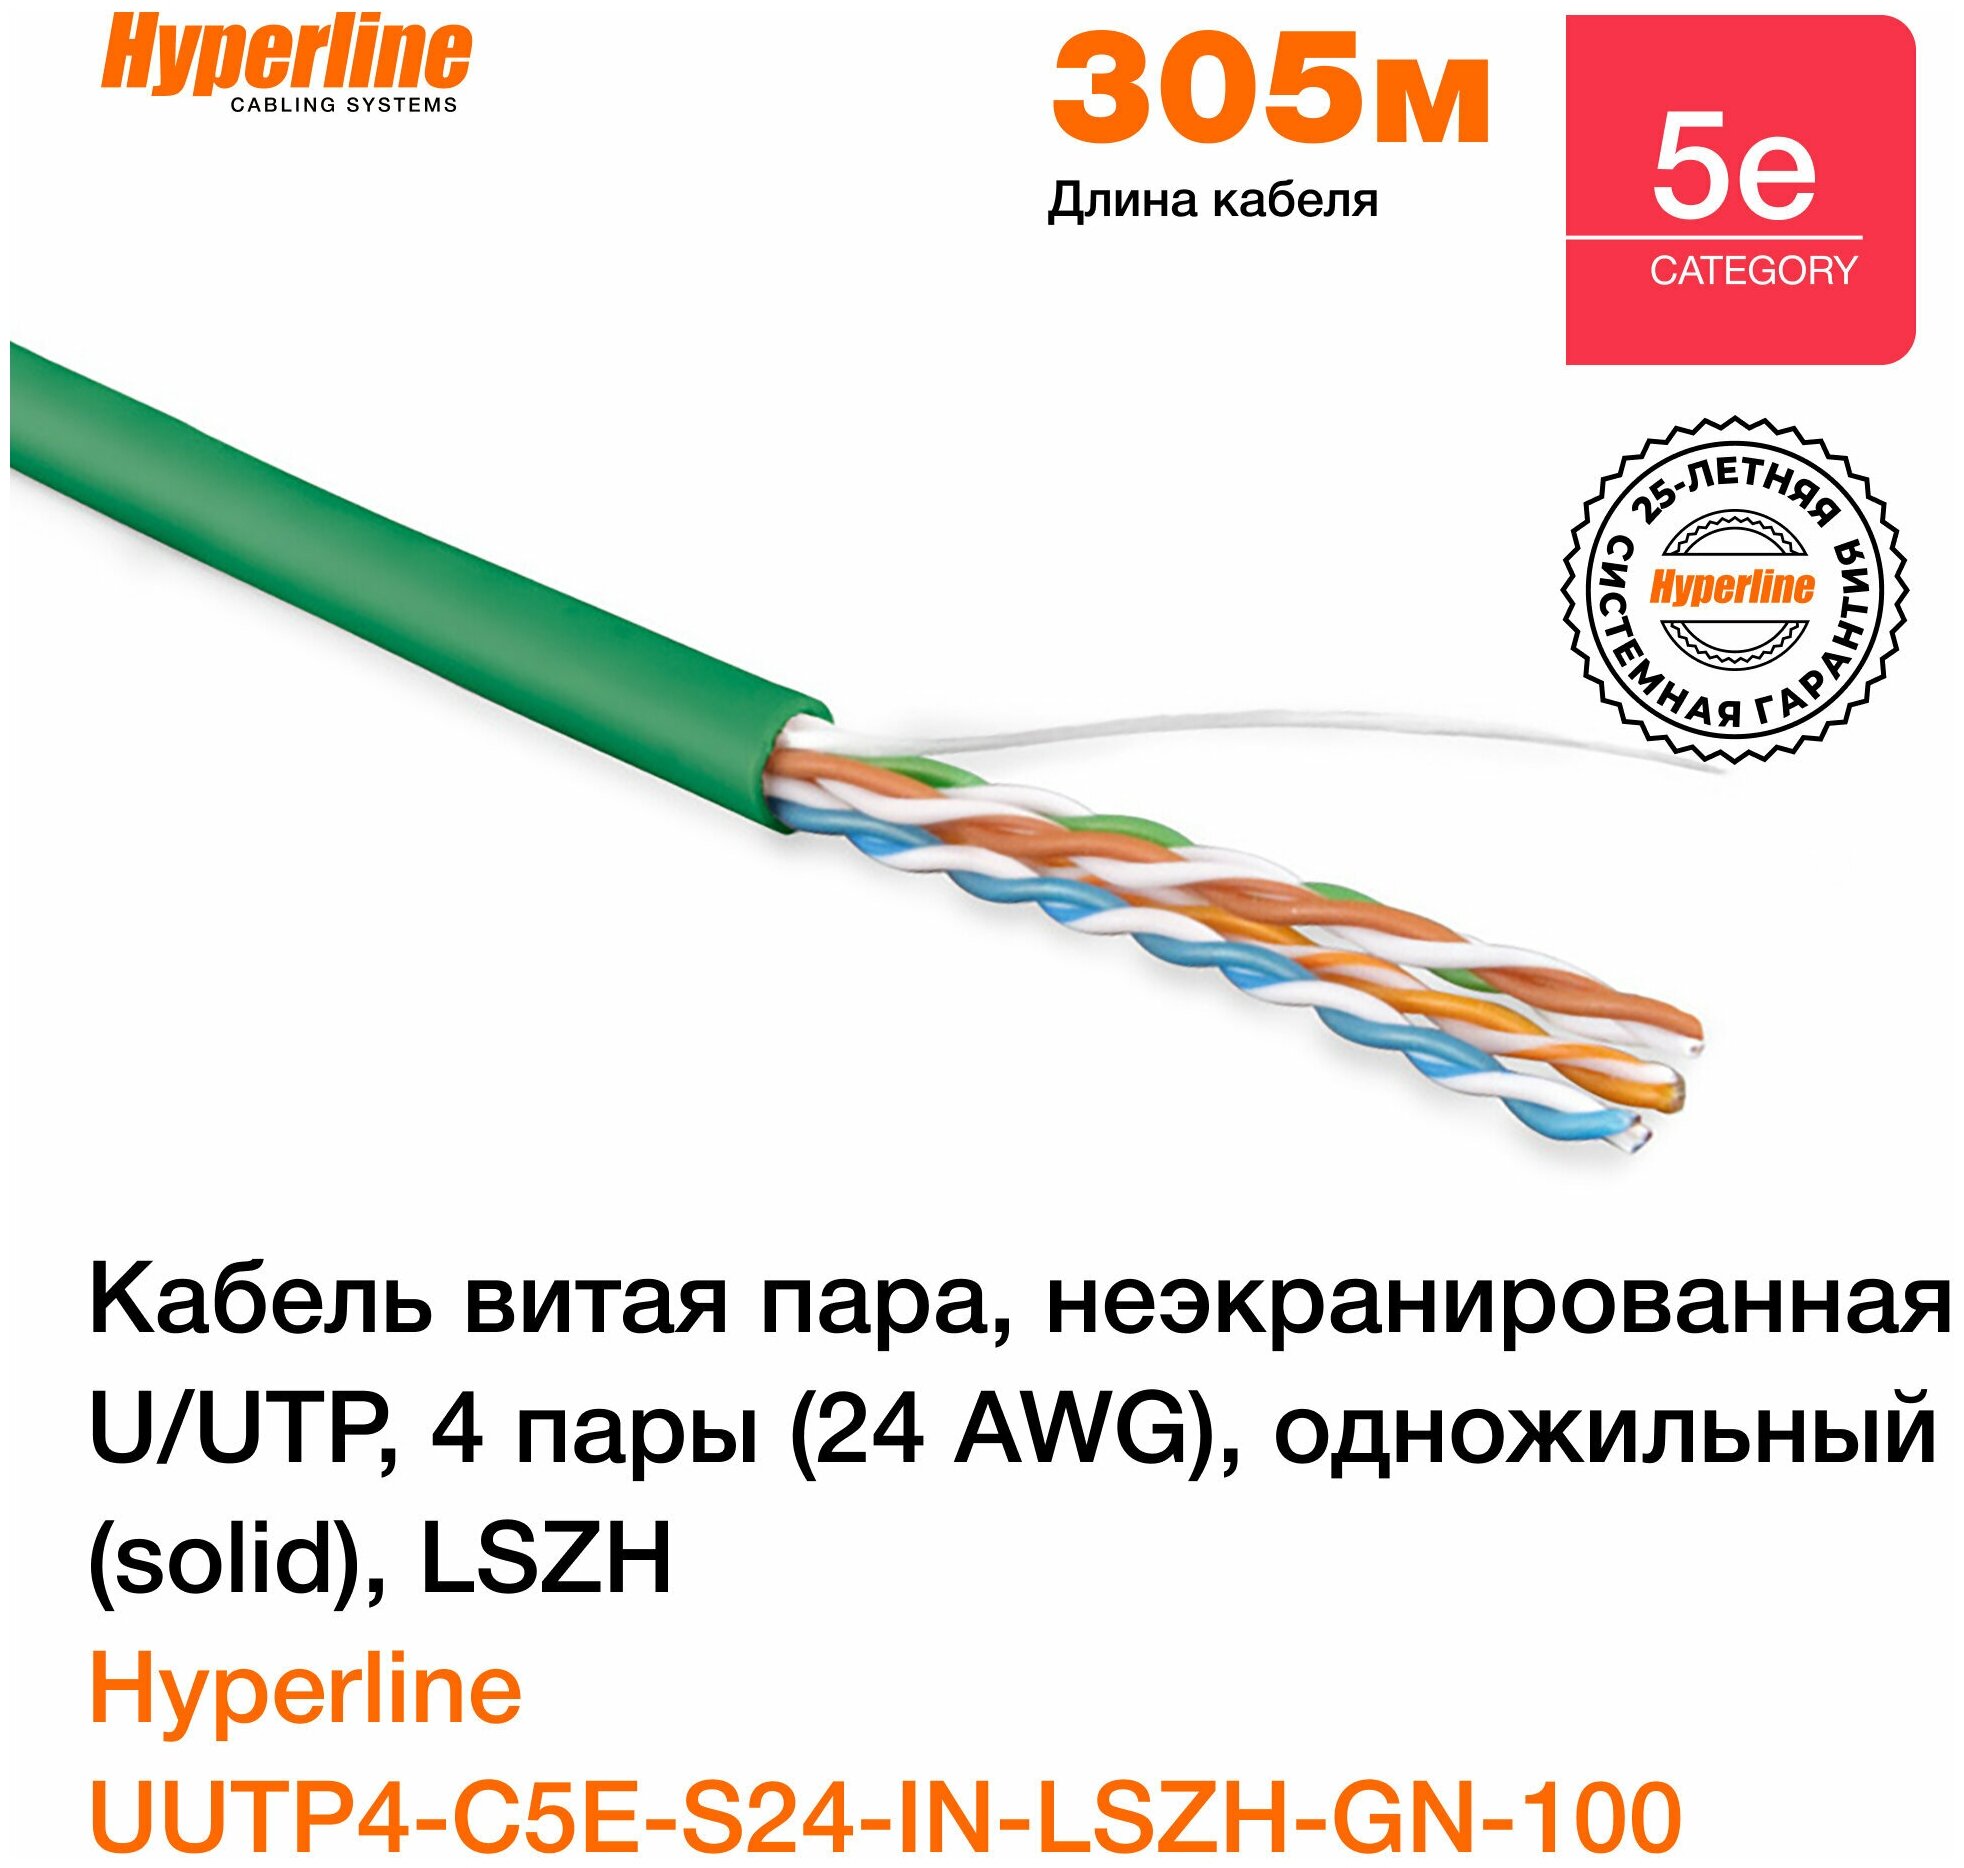 Кабель витая пара для локальной сети Hyperline Ethernet Lan для интернета неэкранированный U/UTP категория 5e 4 пары (24 AWG) одножильный, LSZH, 100 м